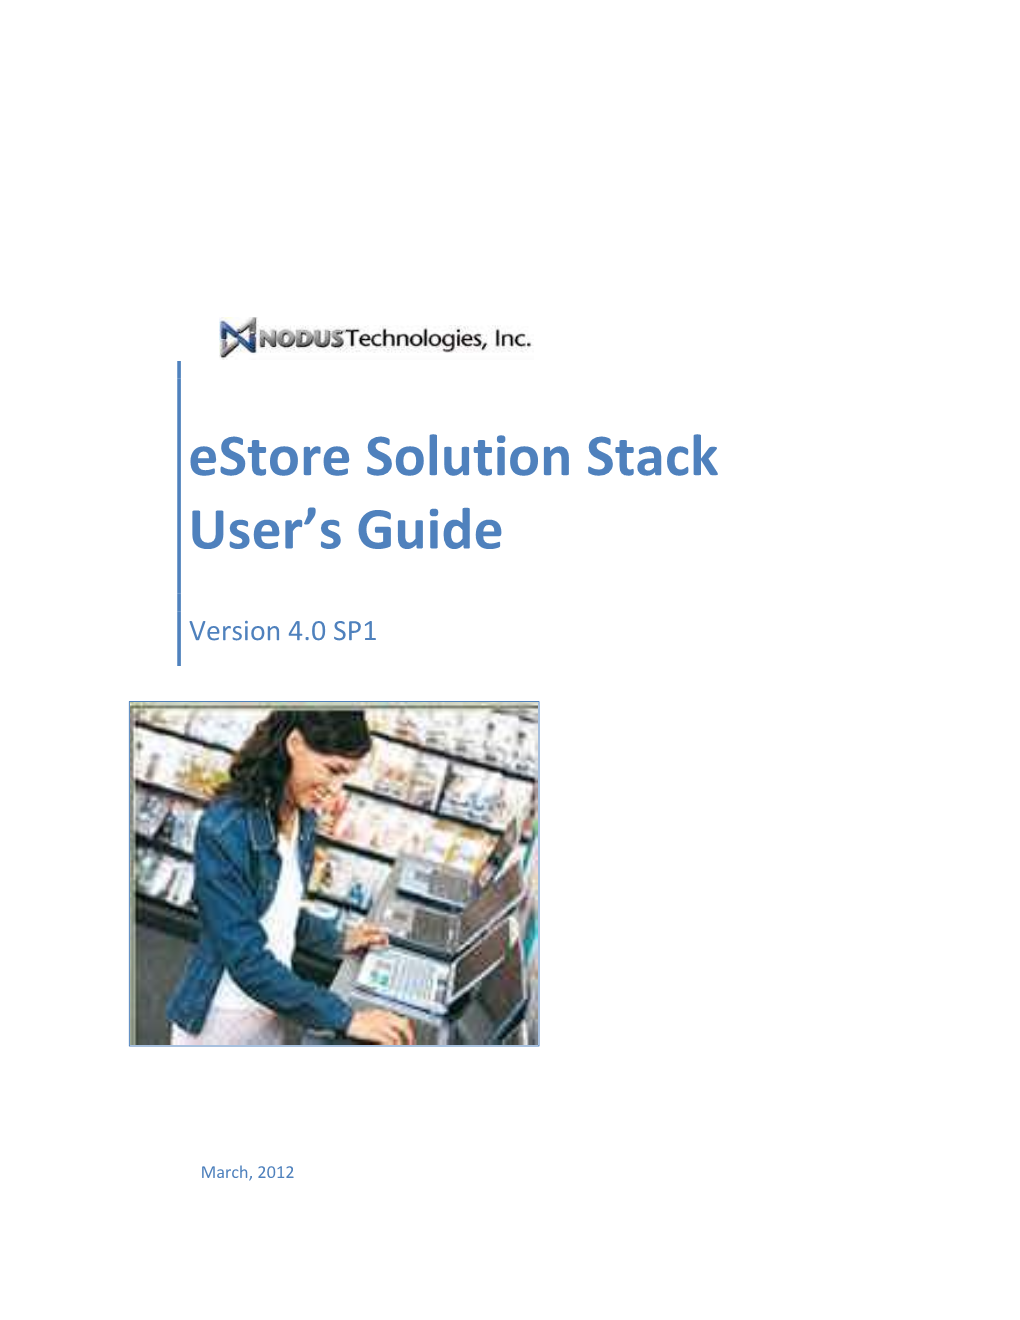 Estore Solution Stack User's Guide